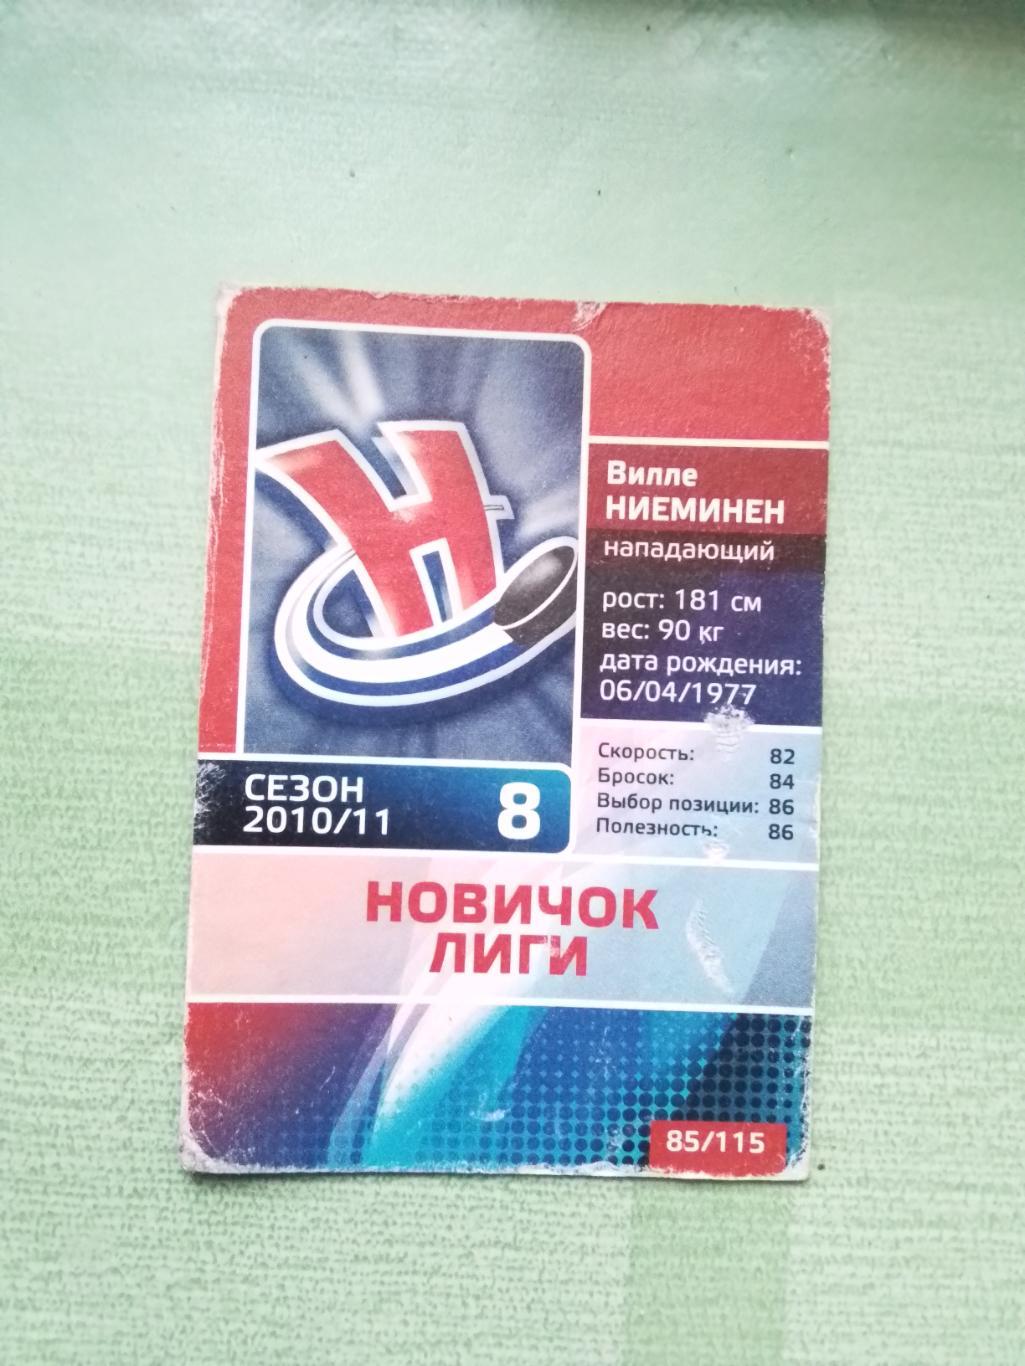 Хоккей Карточка КХЛ 2010 -11 Вилле Ниеминен Сибирь Новосибирск # 85 / 115 1